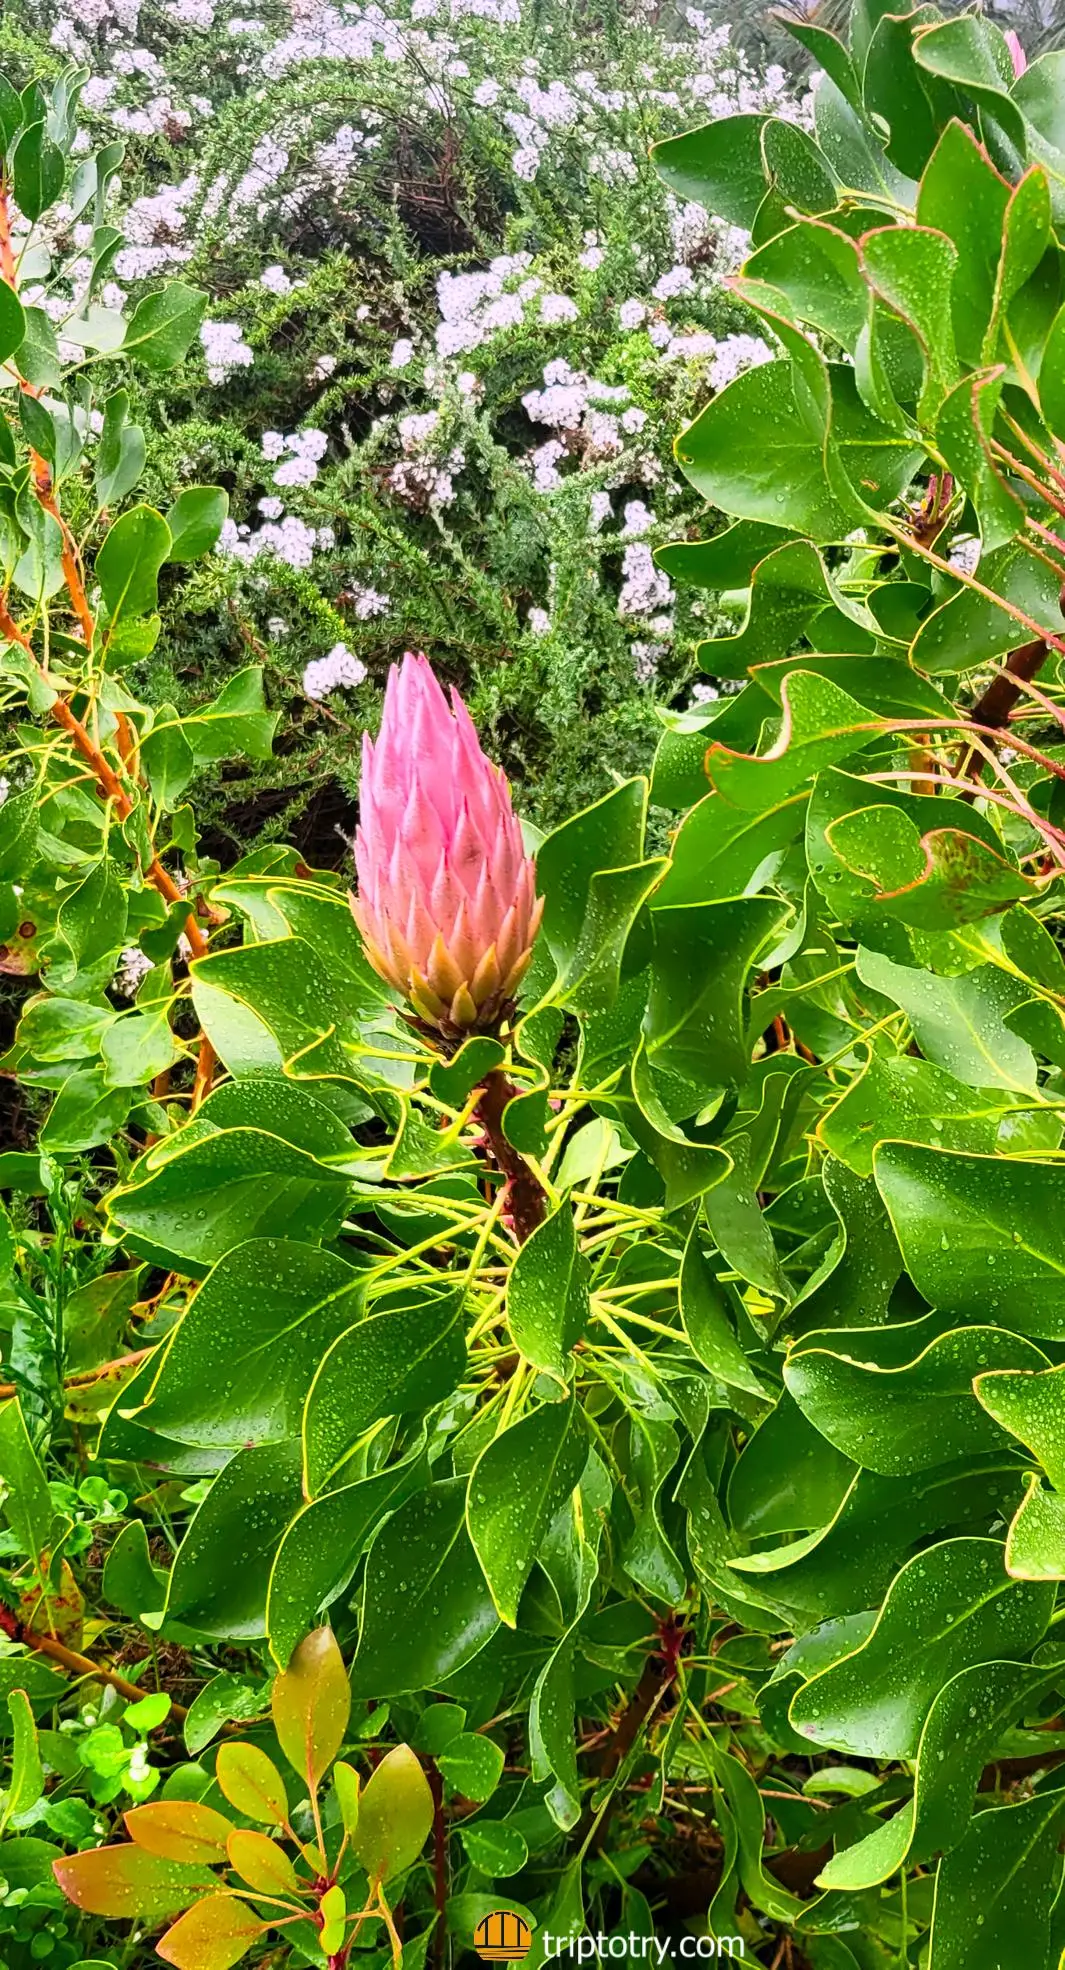 Itinerario Cape Town cosa vedere in 4 giorni - cosa da vedere a Città del Capo: fiore di protea nel giardino botanico di Kirstenbosch a Città del Capo - 4 days in Cape Town itinerary